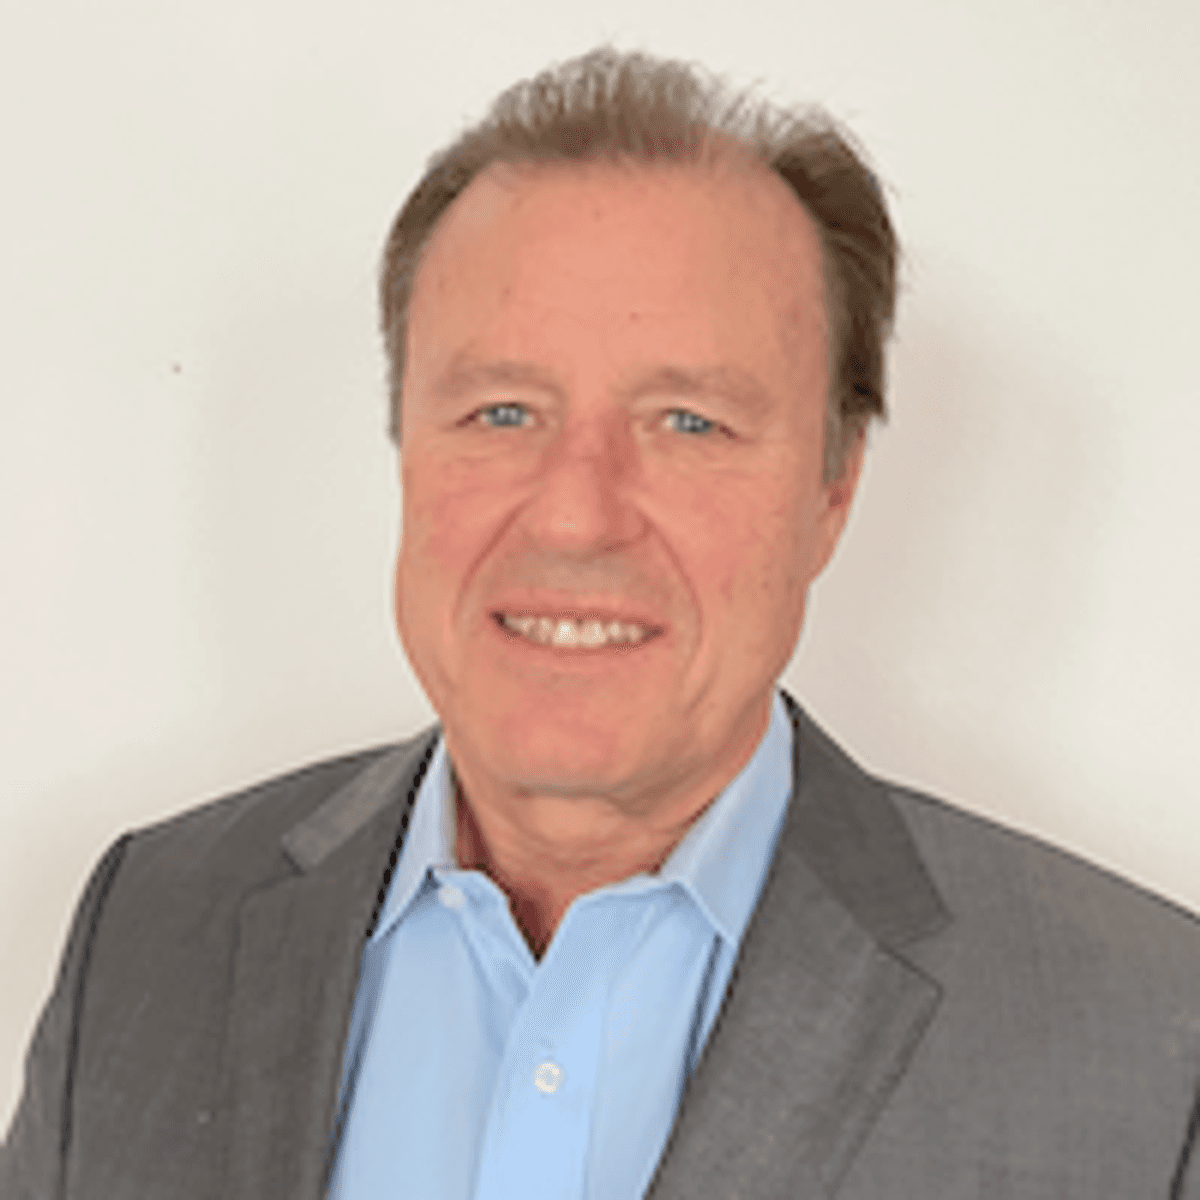 Hans-Peter Bauer benoemd tot Senior Vice President EMEA bij BlackBerry image